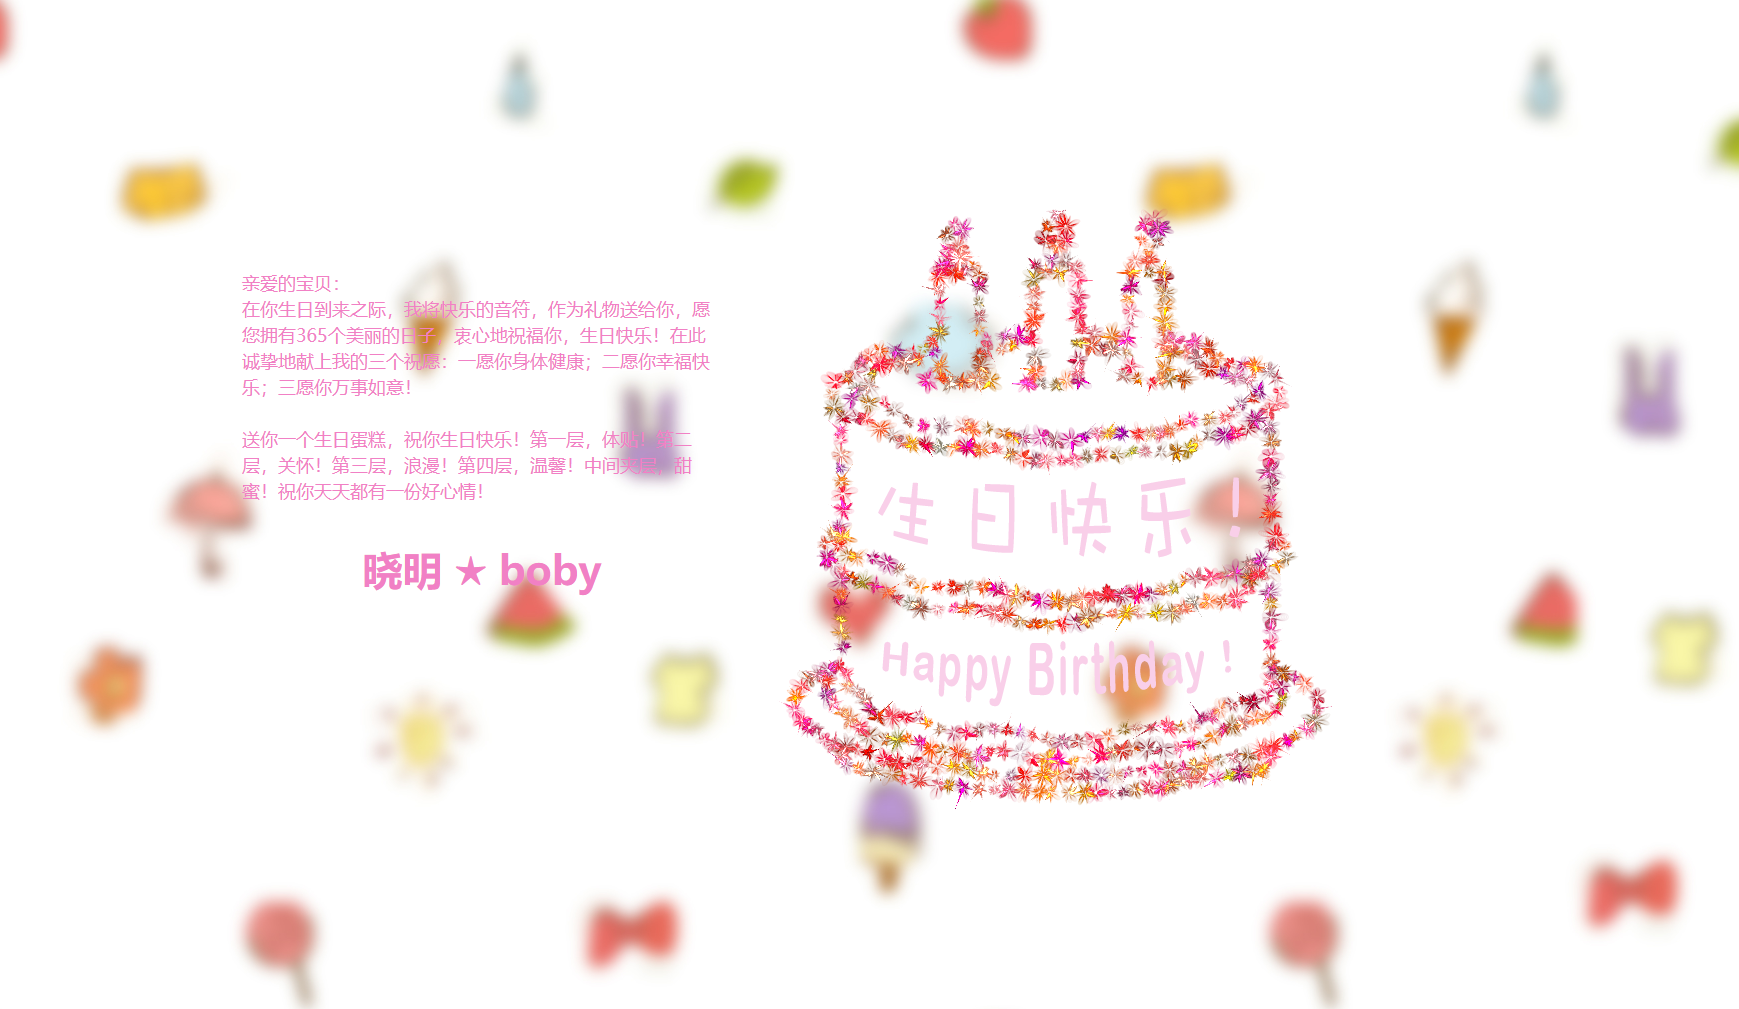 HTML+CSS+JS制作一个生日祝福网站(程序员专属情人节表白网站)